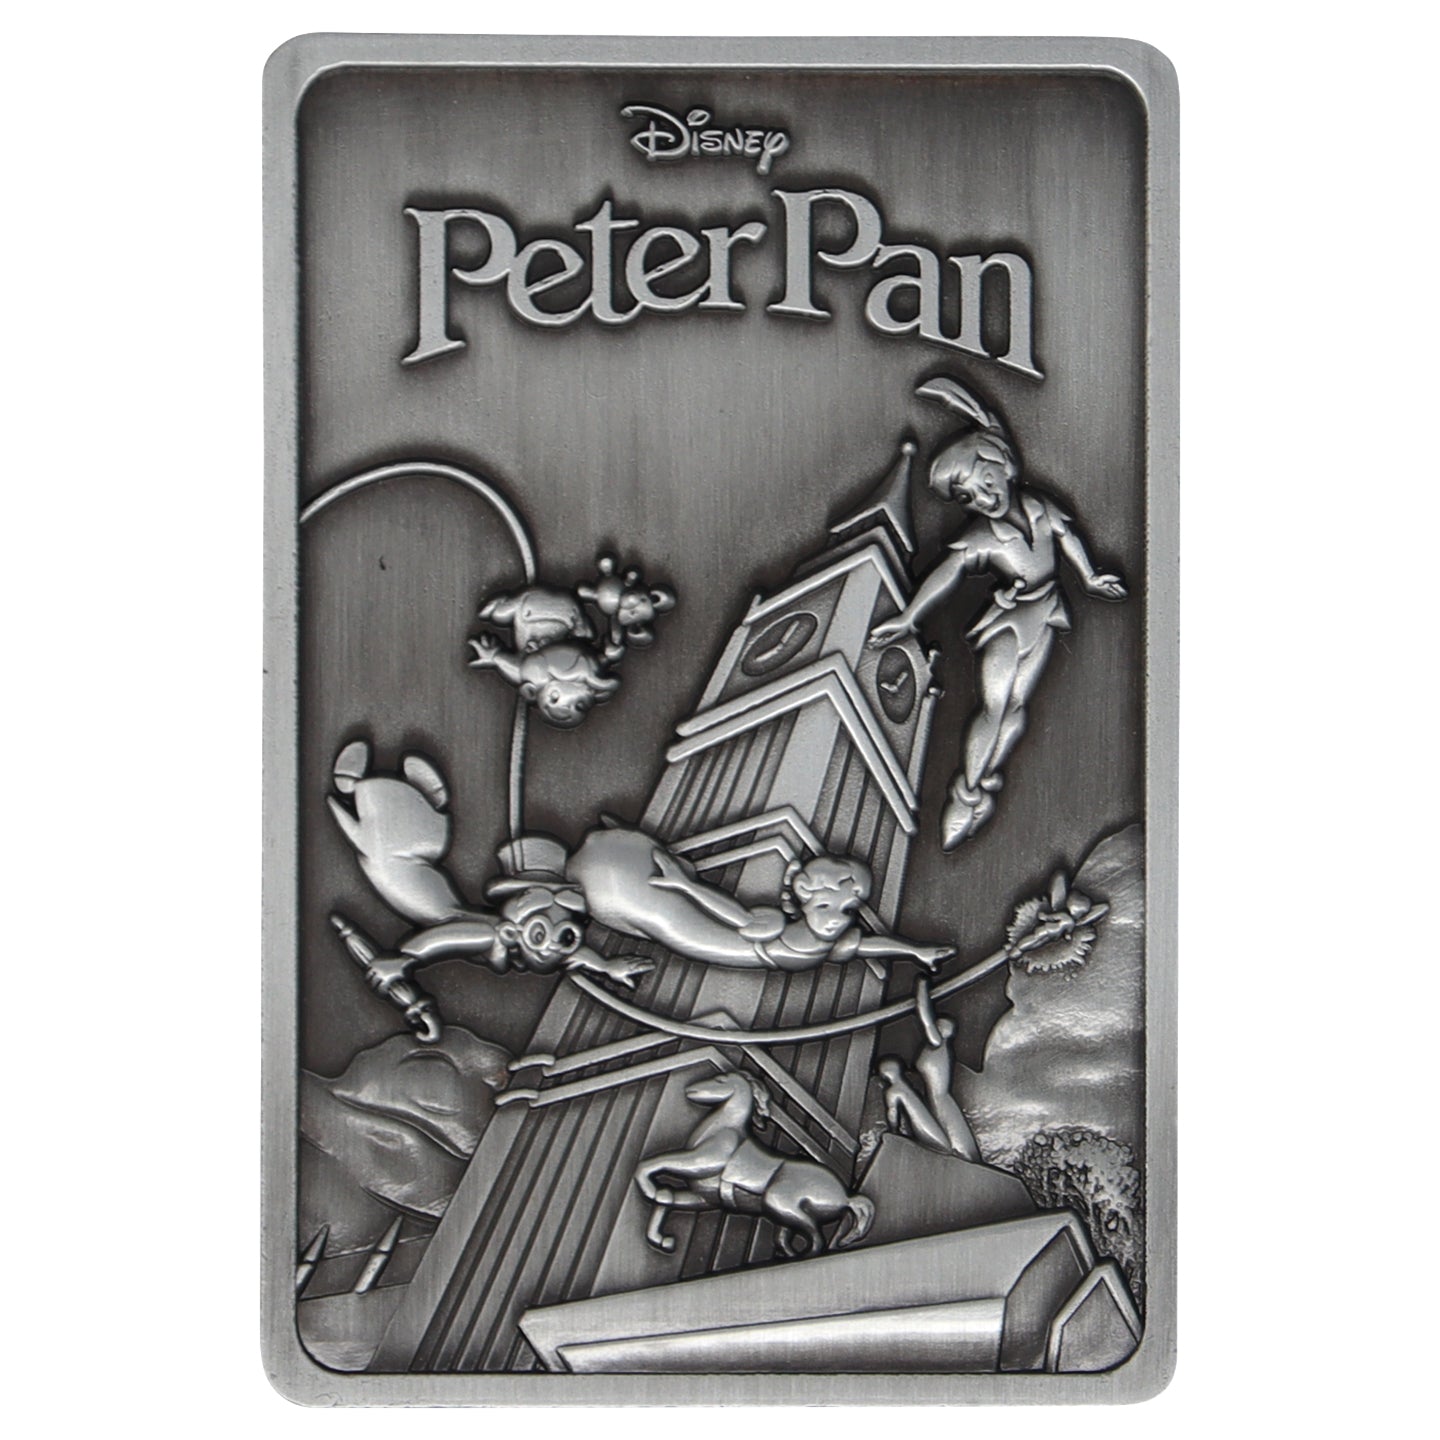 Disney Limited Edition Peter Pan Ingot